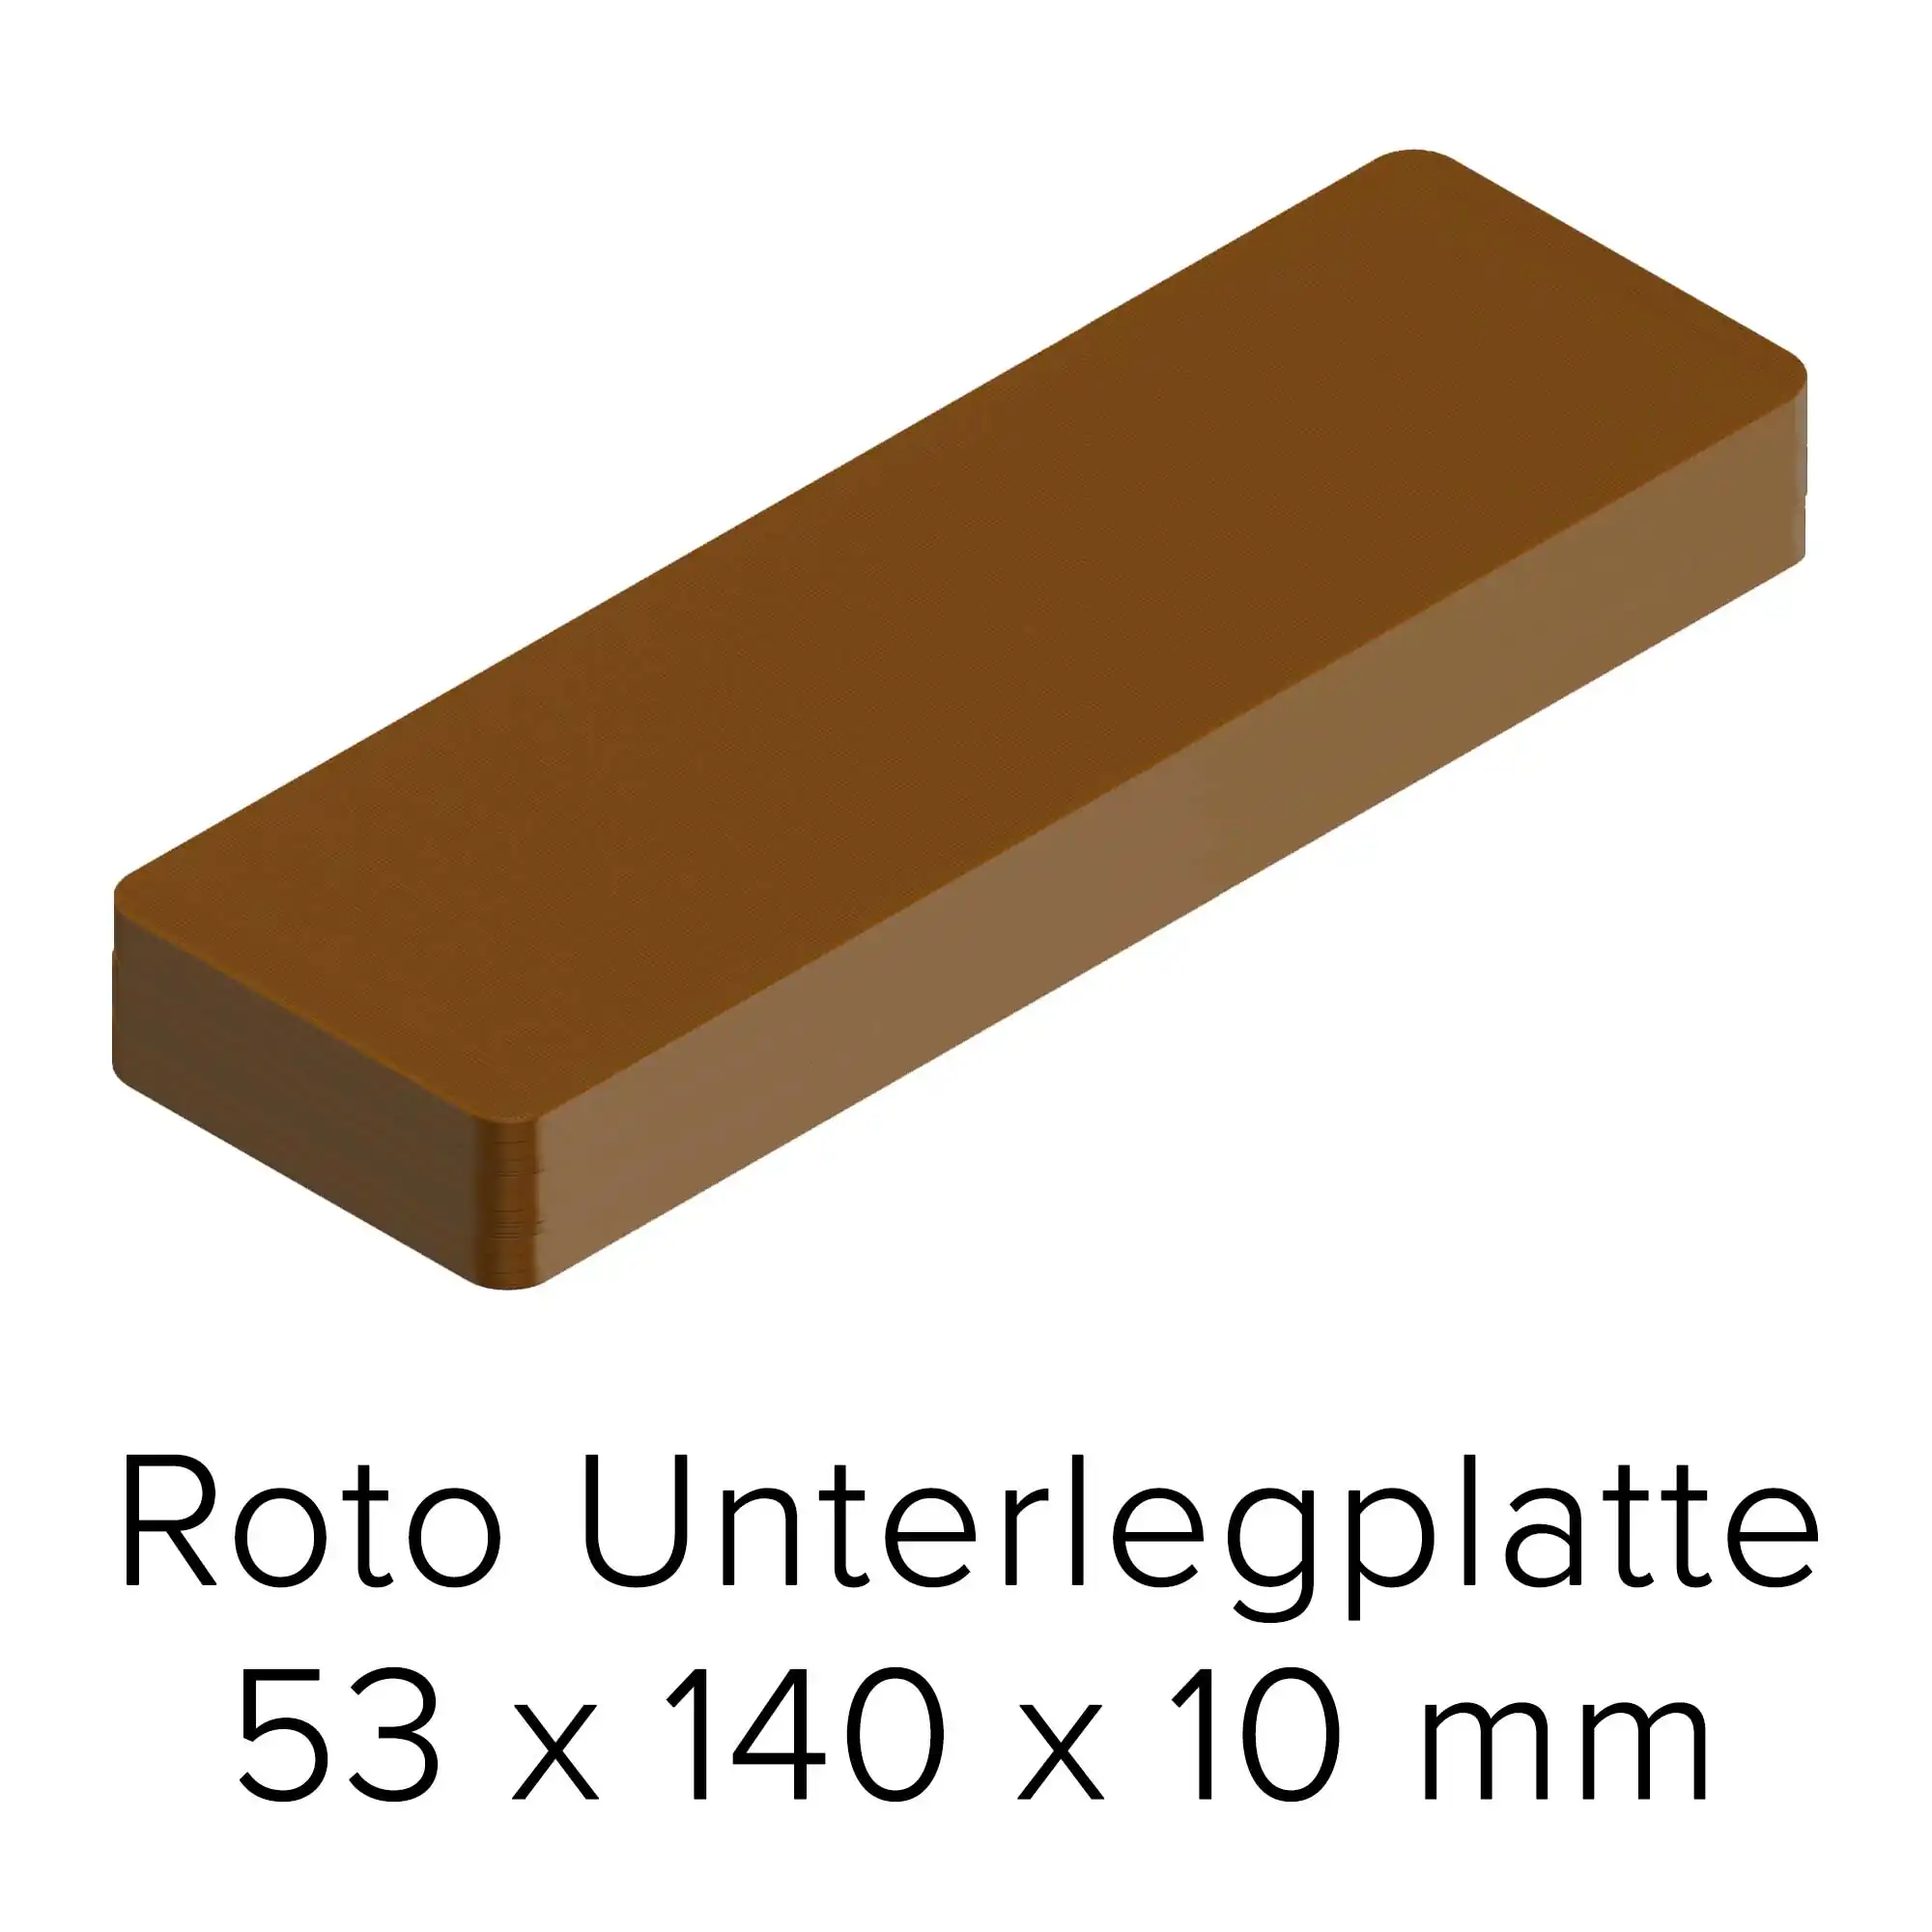 Roto Unterlegplatte 53 x 140 x 10 mm